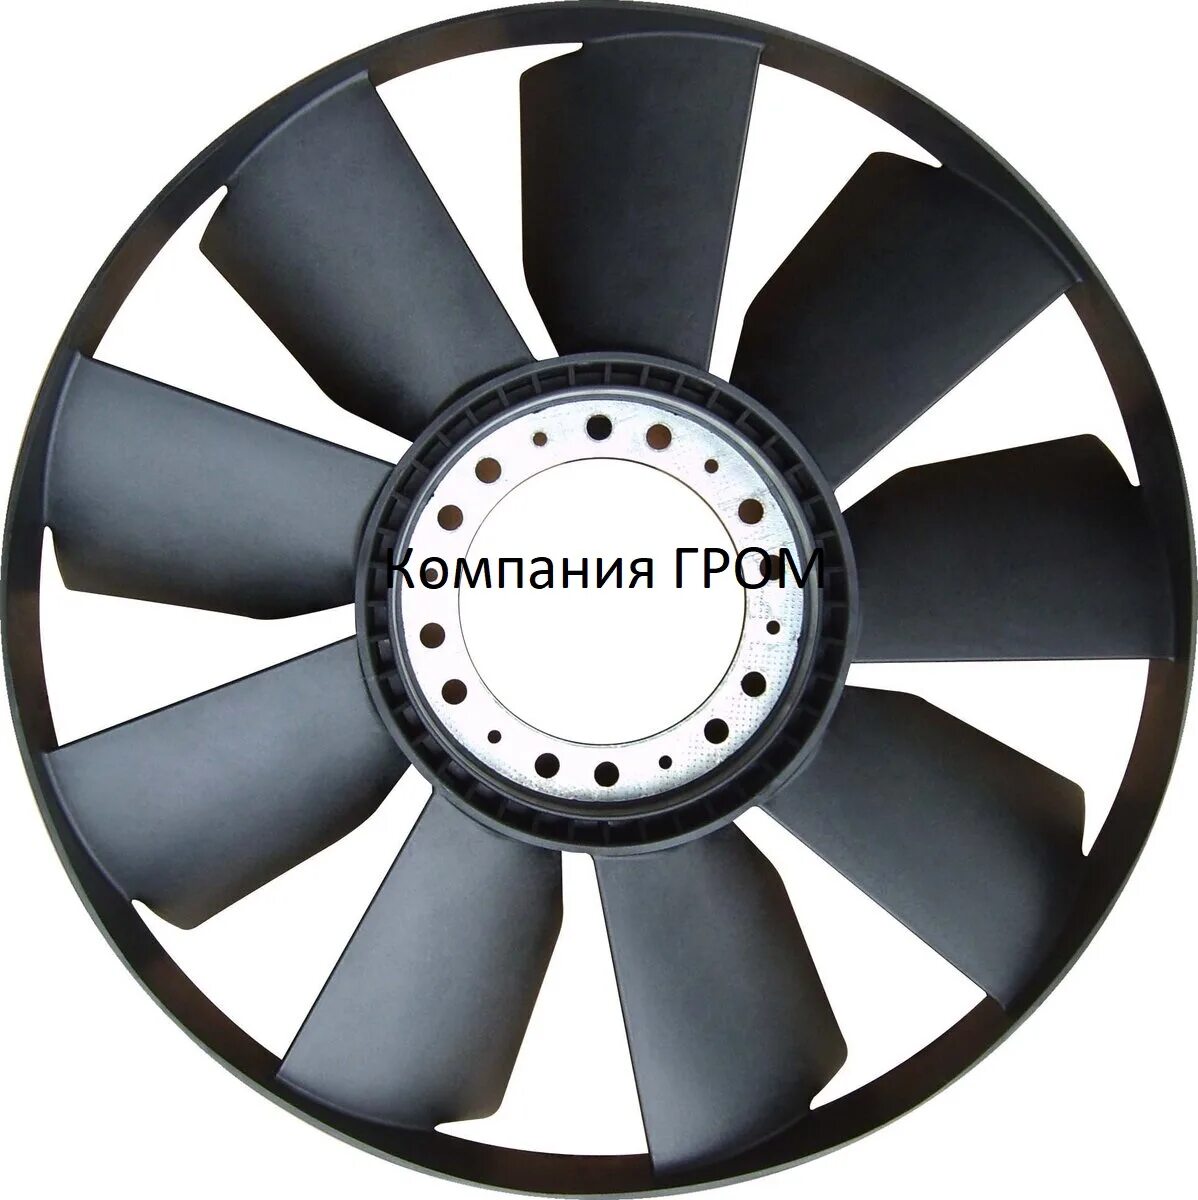 Крыльчатка вентилятора КАМАЗ 650 мм. Крыльчатка вентилятора КАМАЗ 65115. Волжанин 5270 крыльчатка вентилятора. Вентилятор ЯМЗ 650. Купить колесо вентилятора